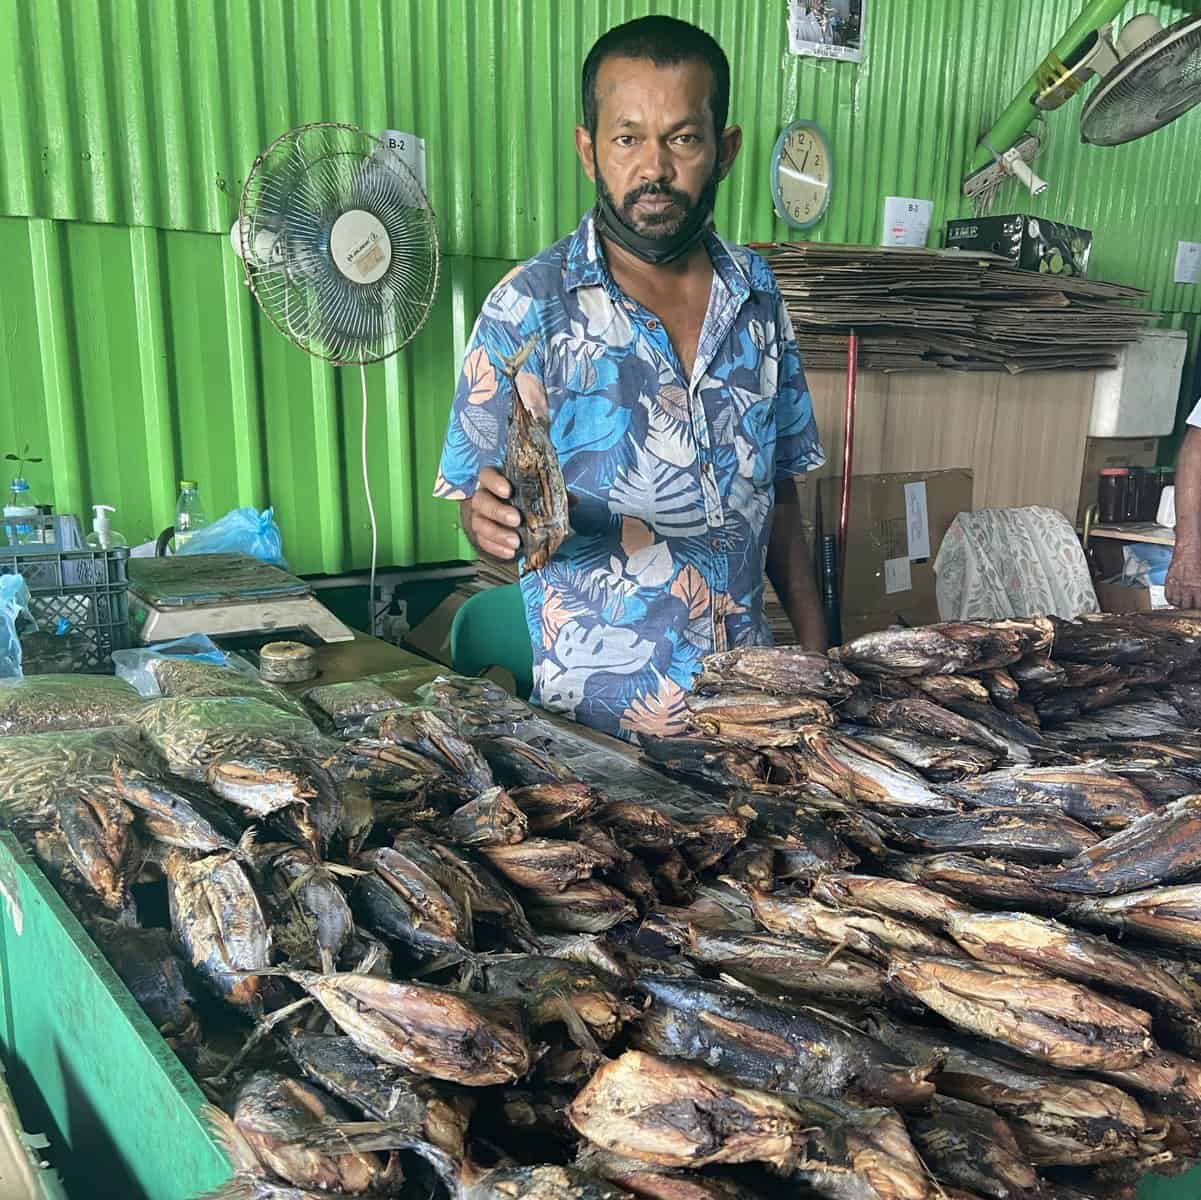 Vendedor de peixes secos no mercado de Male